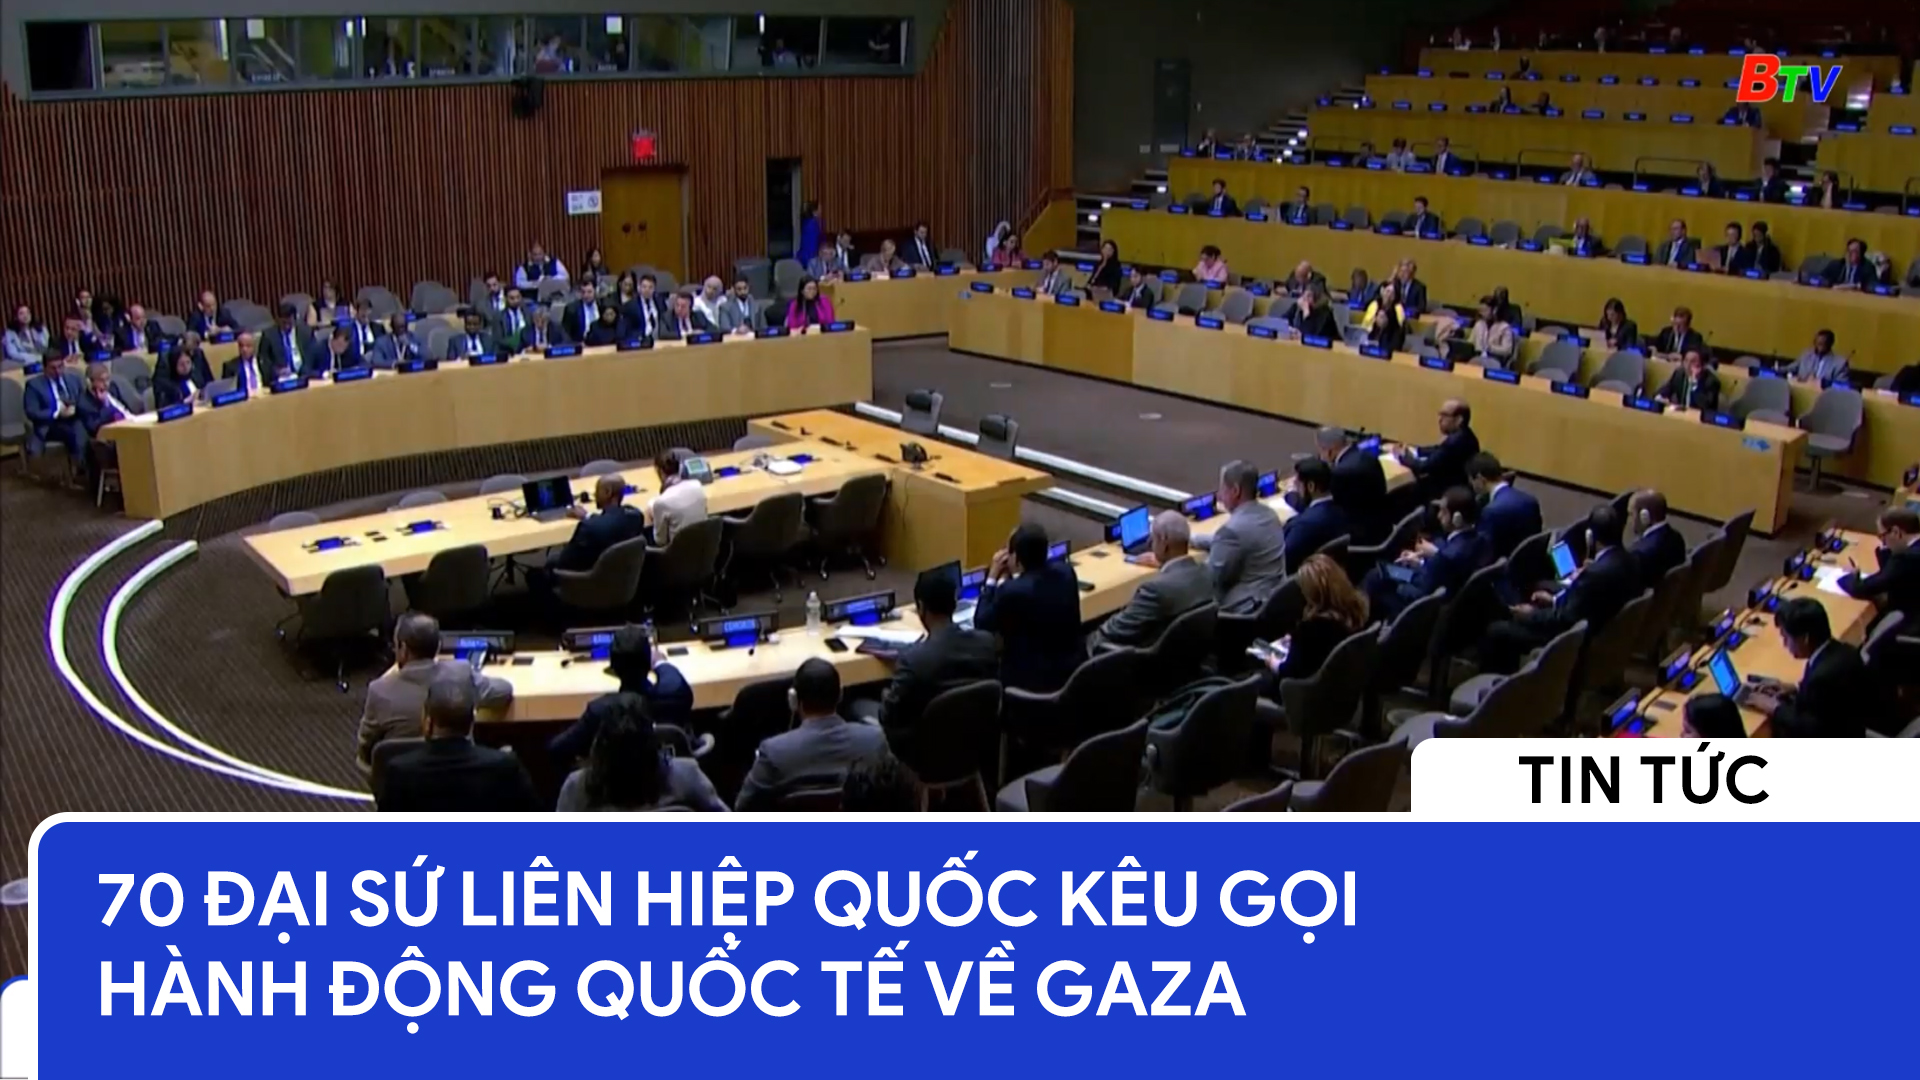 70 đại sứ Liên hiệp quốc kêu gọi hành động quốc tế về Gaza